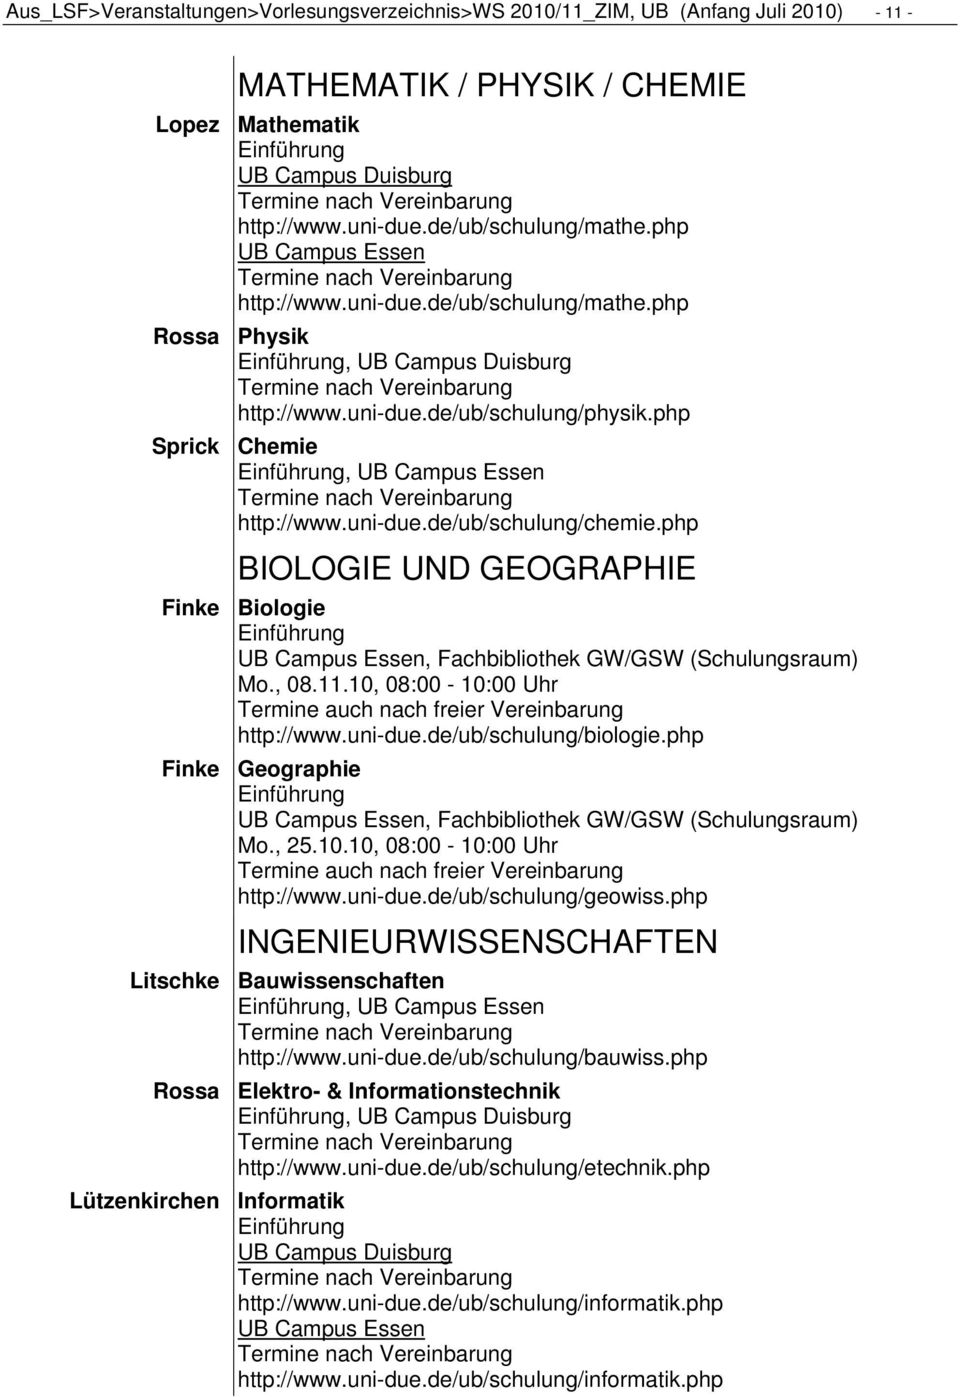 php BIOLOGIE UND GEOGRAPHIE Finke Biologie Mo., 08.11.10, 08:00-10:00 Uhr Termine auch nach freier Vereinbarung http://www.uni-due.de/ub/schulung/biologie.php Finke Geographie Mo., 25.10.10, 08:00-10:00 Uhr Termine auch nach freier Vereinbarung http://www.uni-due.de/ub/schulung/geowiss.